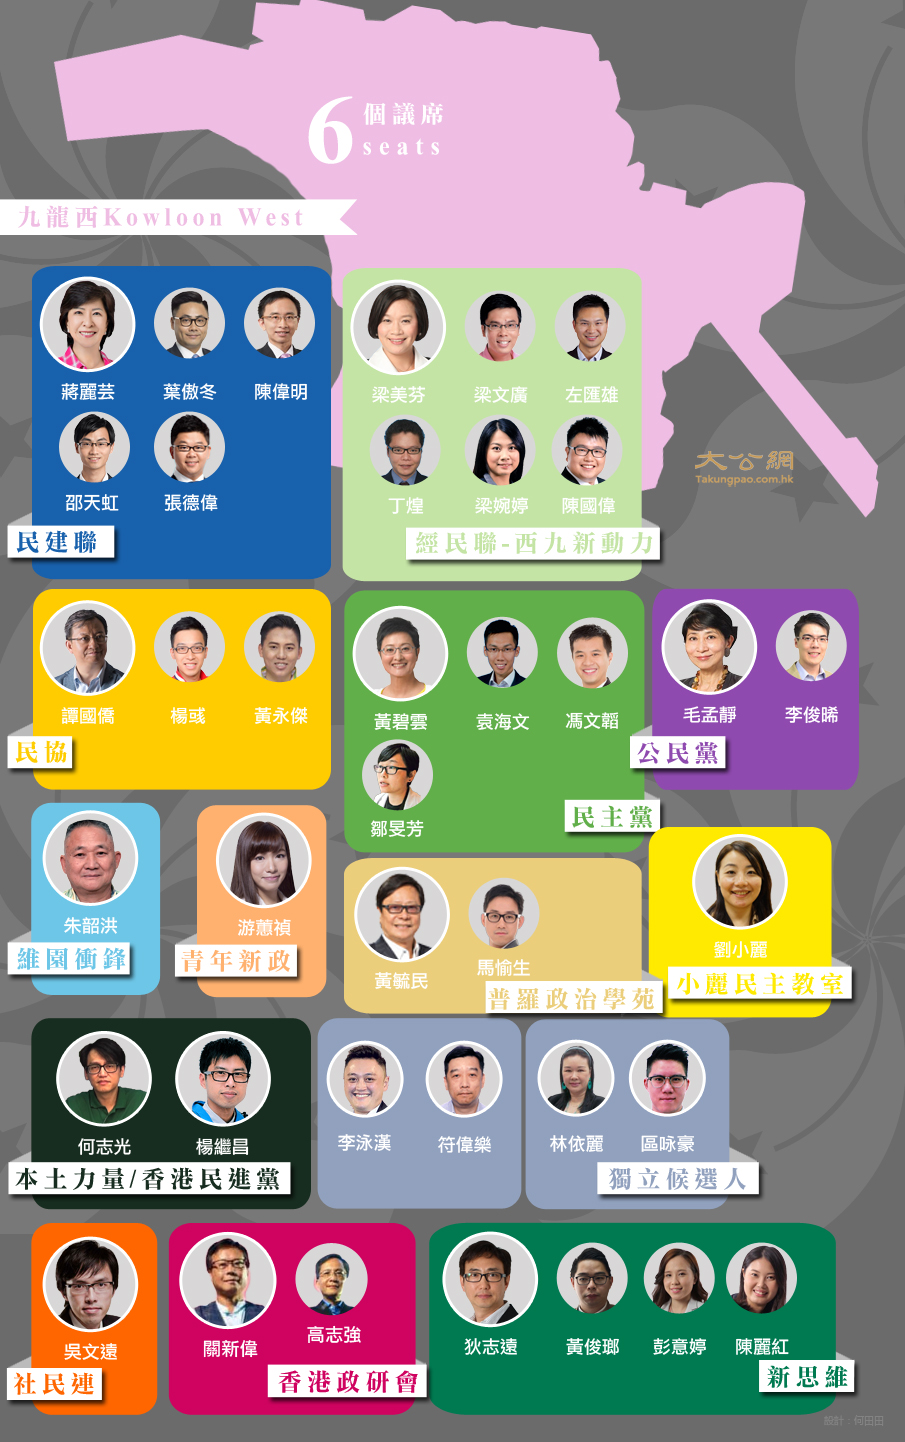 2016年立法会选举九龙西选区